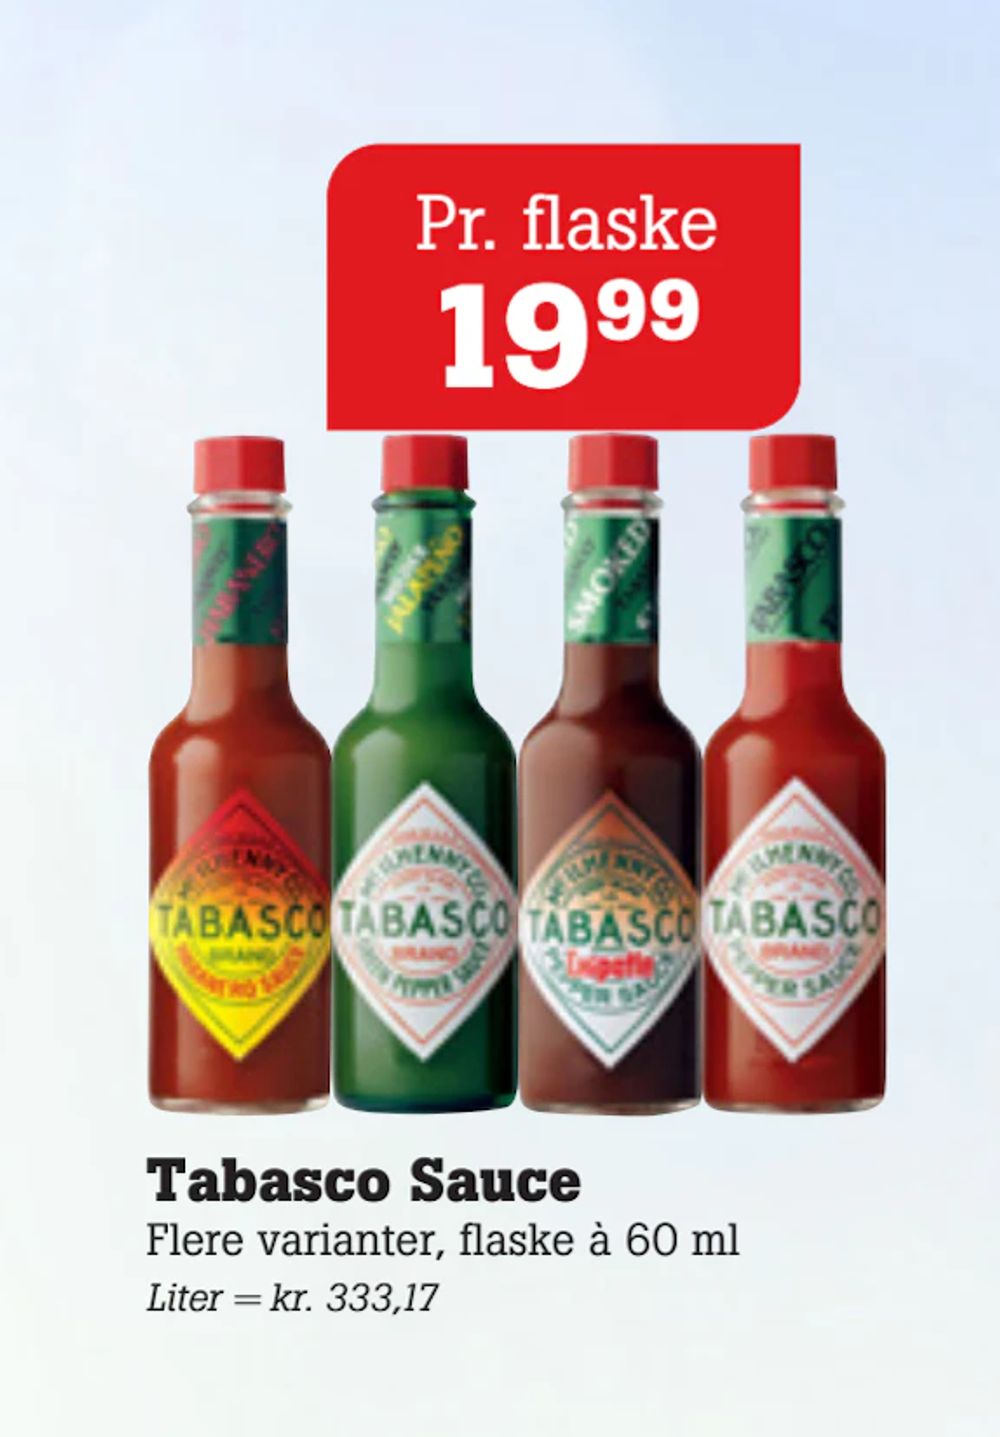 Tilbud på Tabasco Sauce fra Poetzsch Padborg til 19,99 kr.